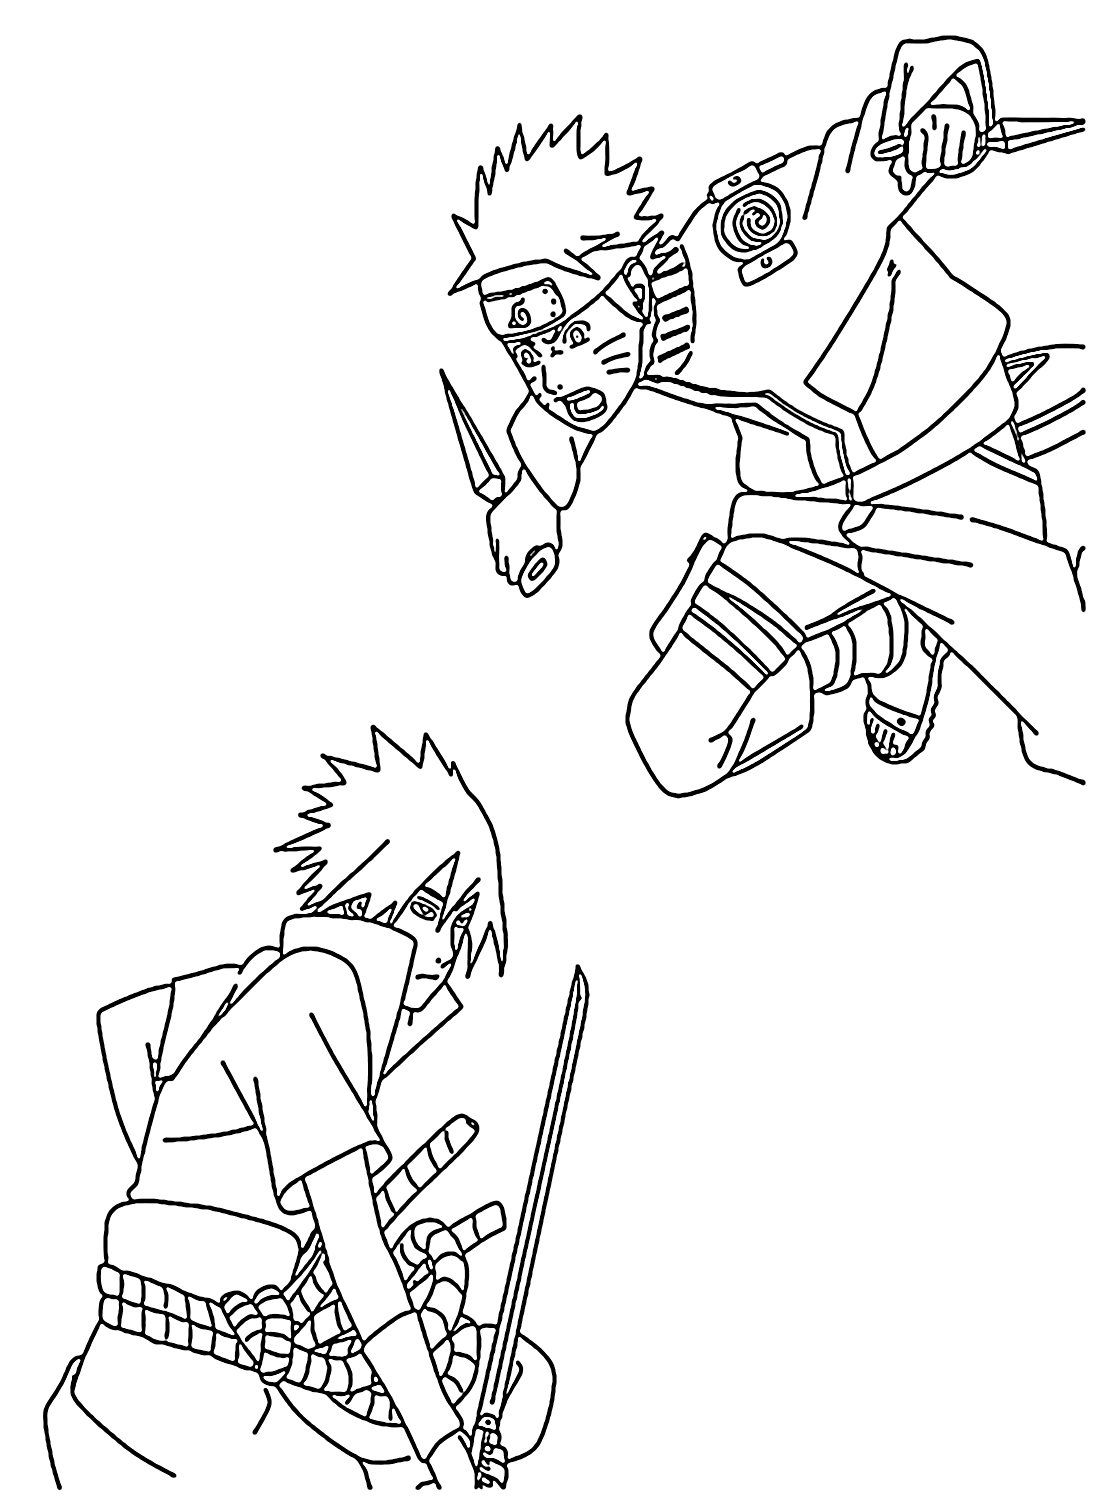 Sasuke vs Naruto Coloring Pages from Sasuke